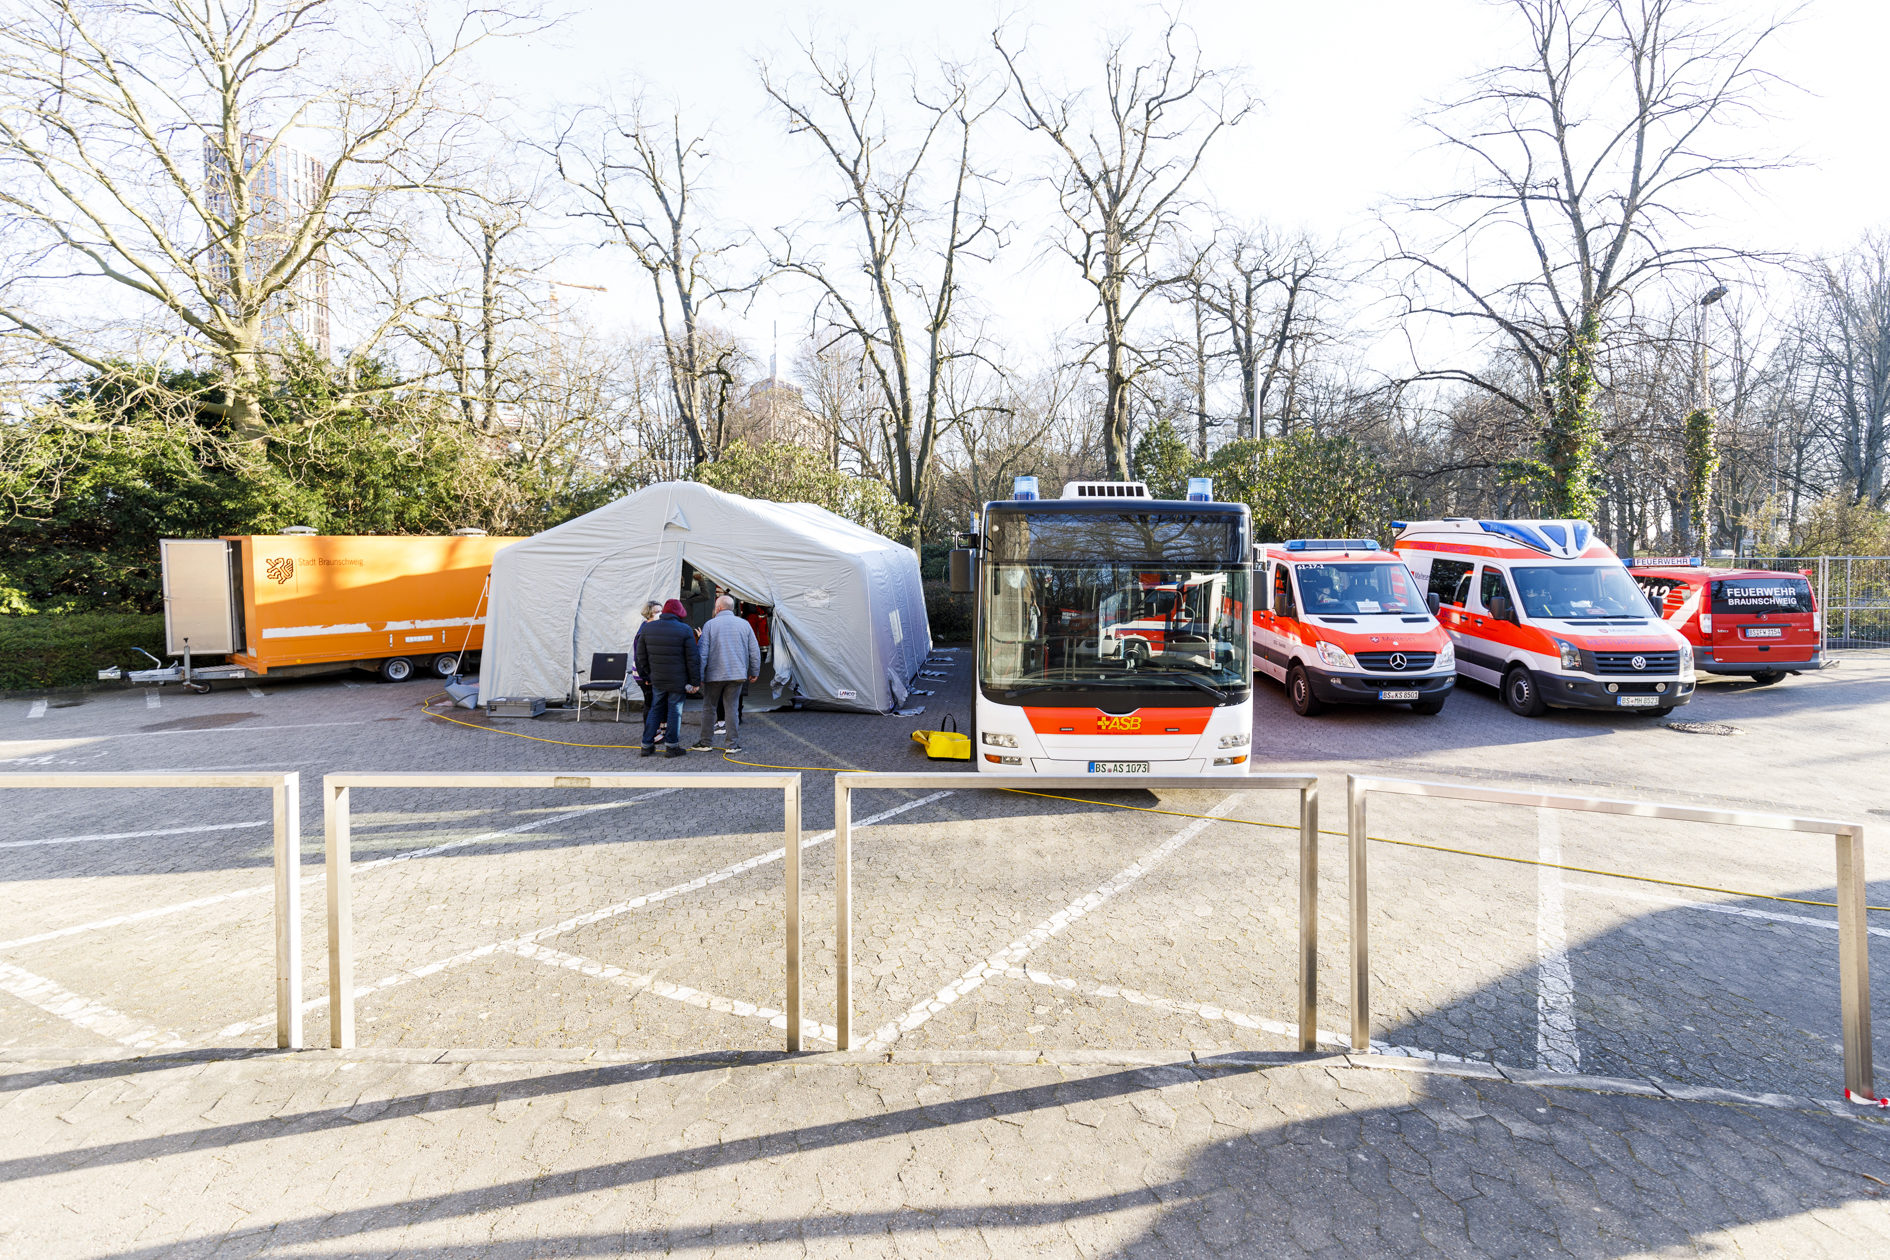 Zelt, Bus, Feuerwehrfahrzeuge (Wird bei Klick vergrößert)